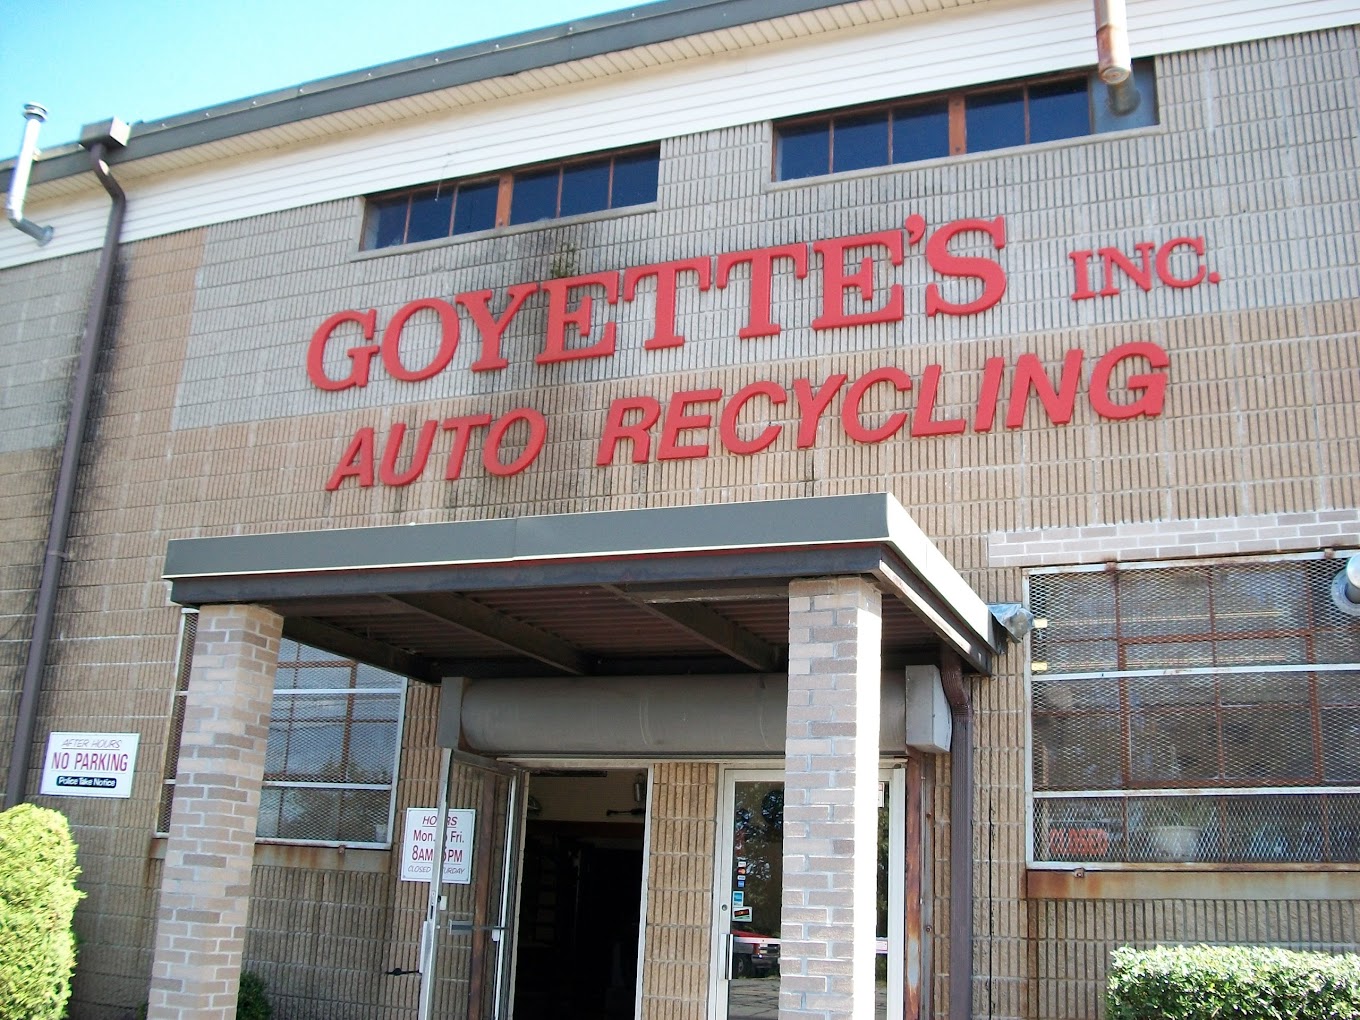 Goyette's Inc.